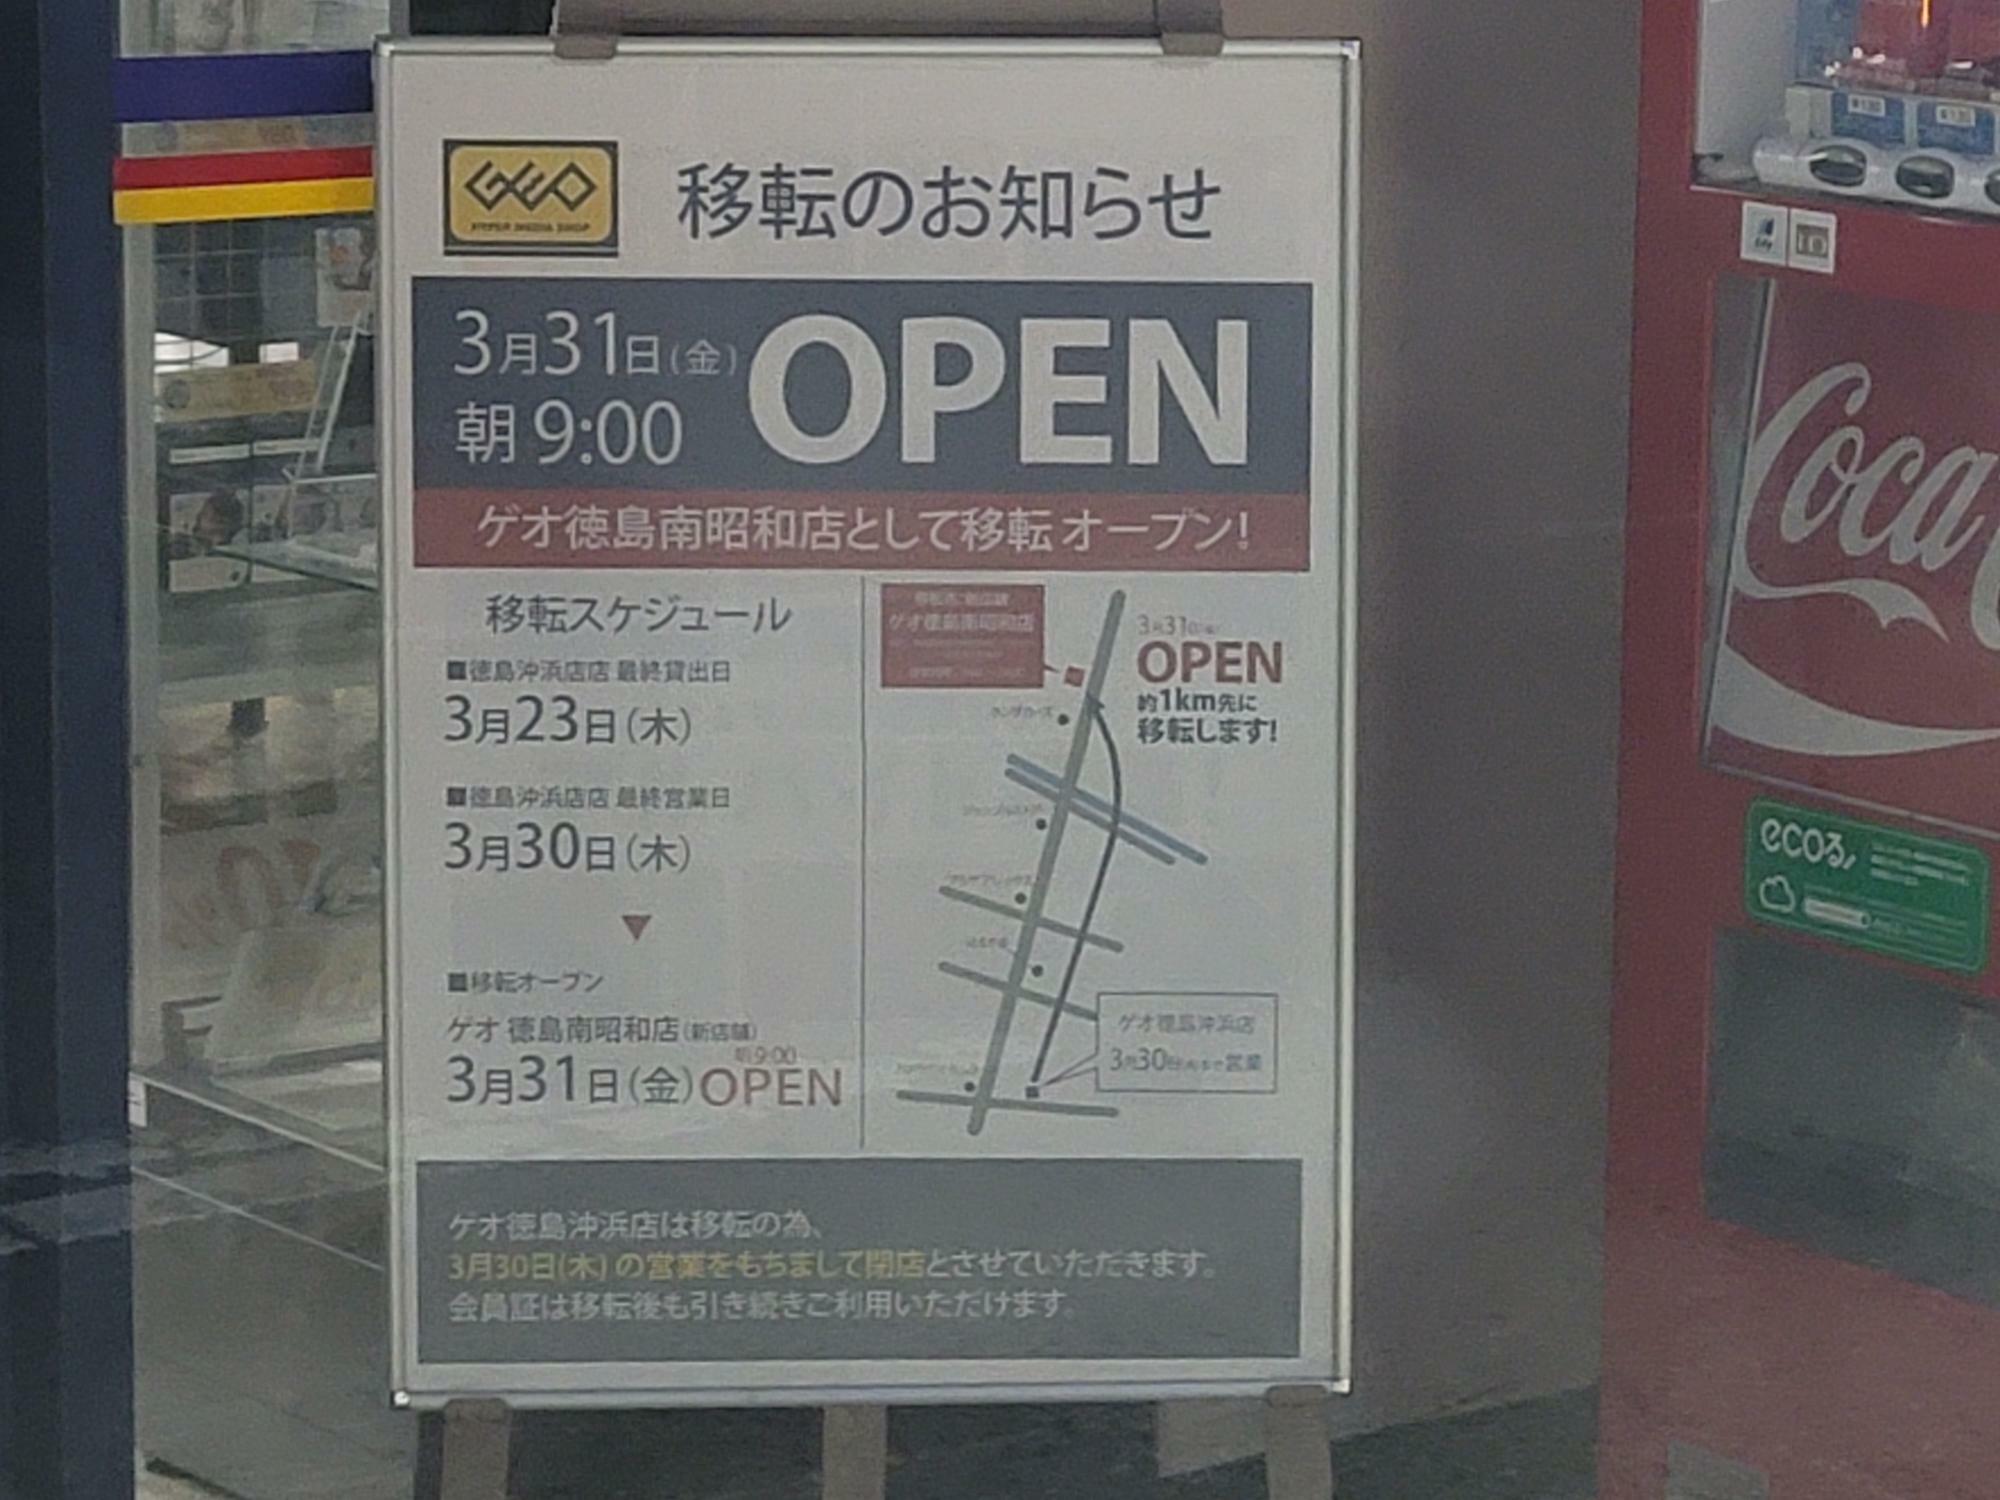 「ゲオ徳島沖浜店」に掲示してあった移転オープンのお知らせ。